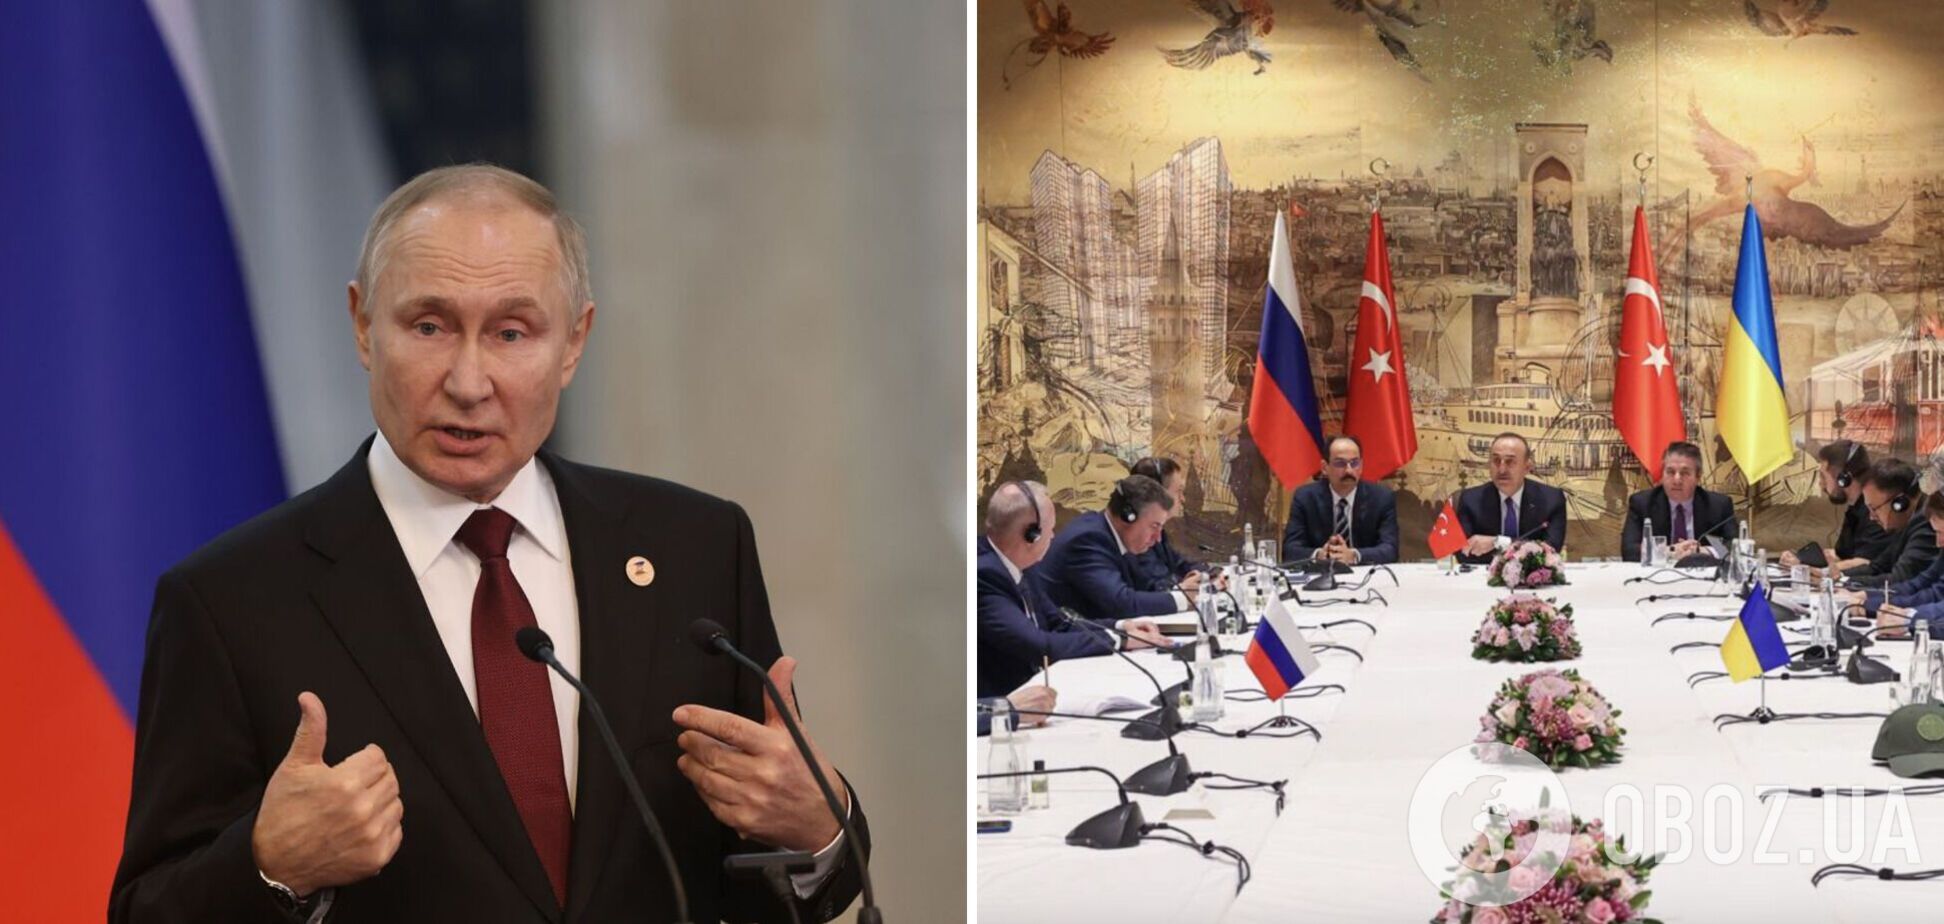 'Придурки, давно все закінчилося б': Путін видав чергову маячню про зрив переговорів між Росією і Україною. Відео